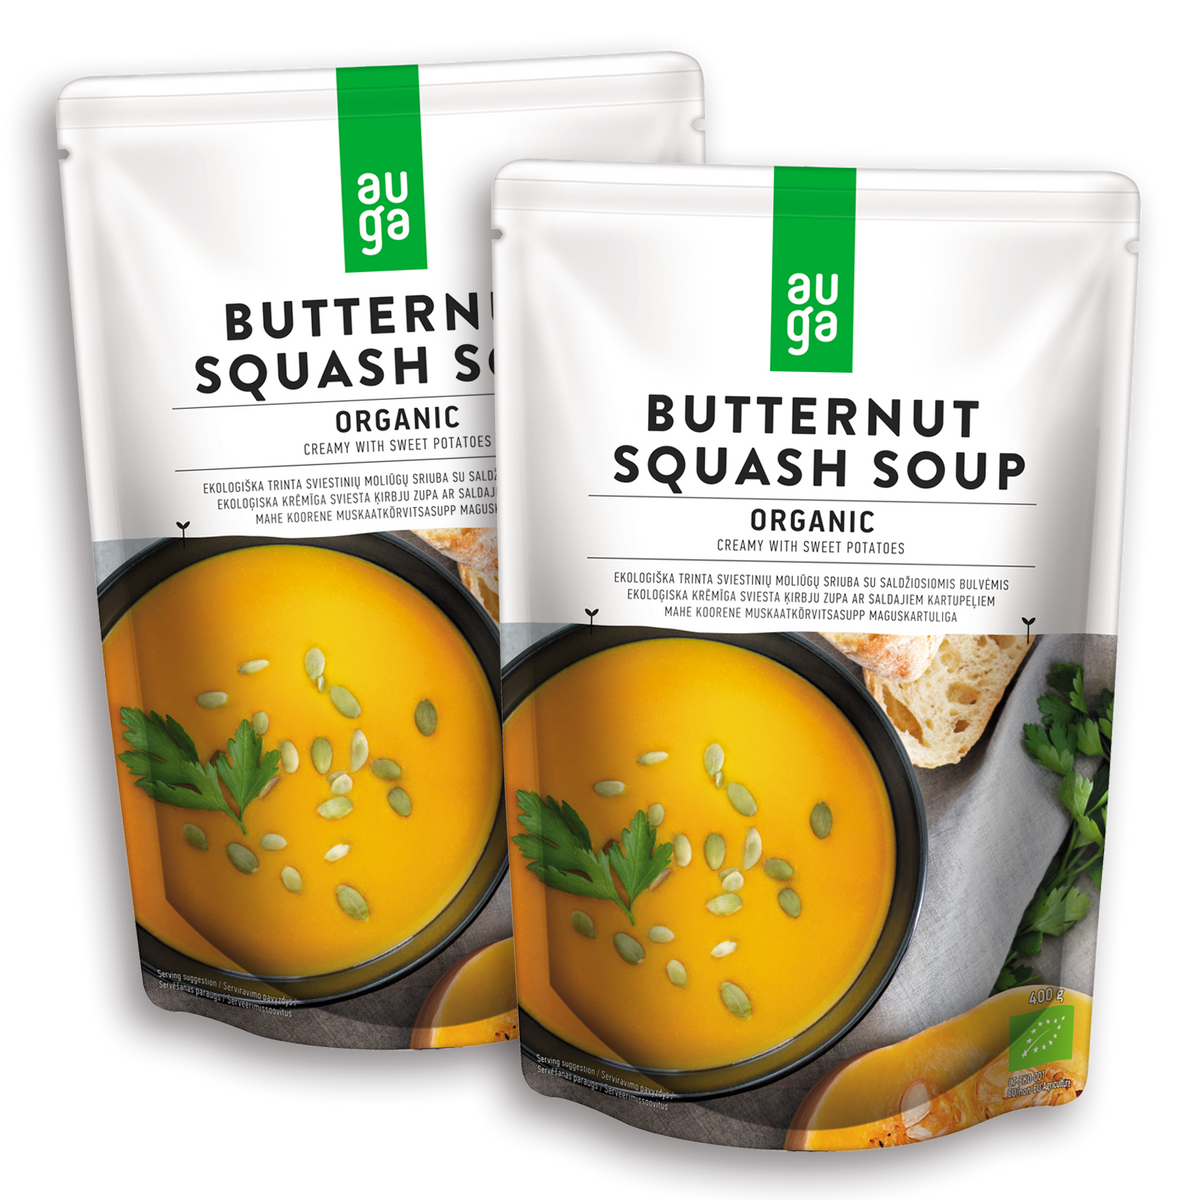 Certified Organic Butternut Squash Soup (800g)